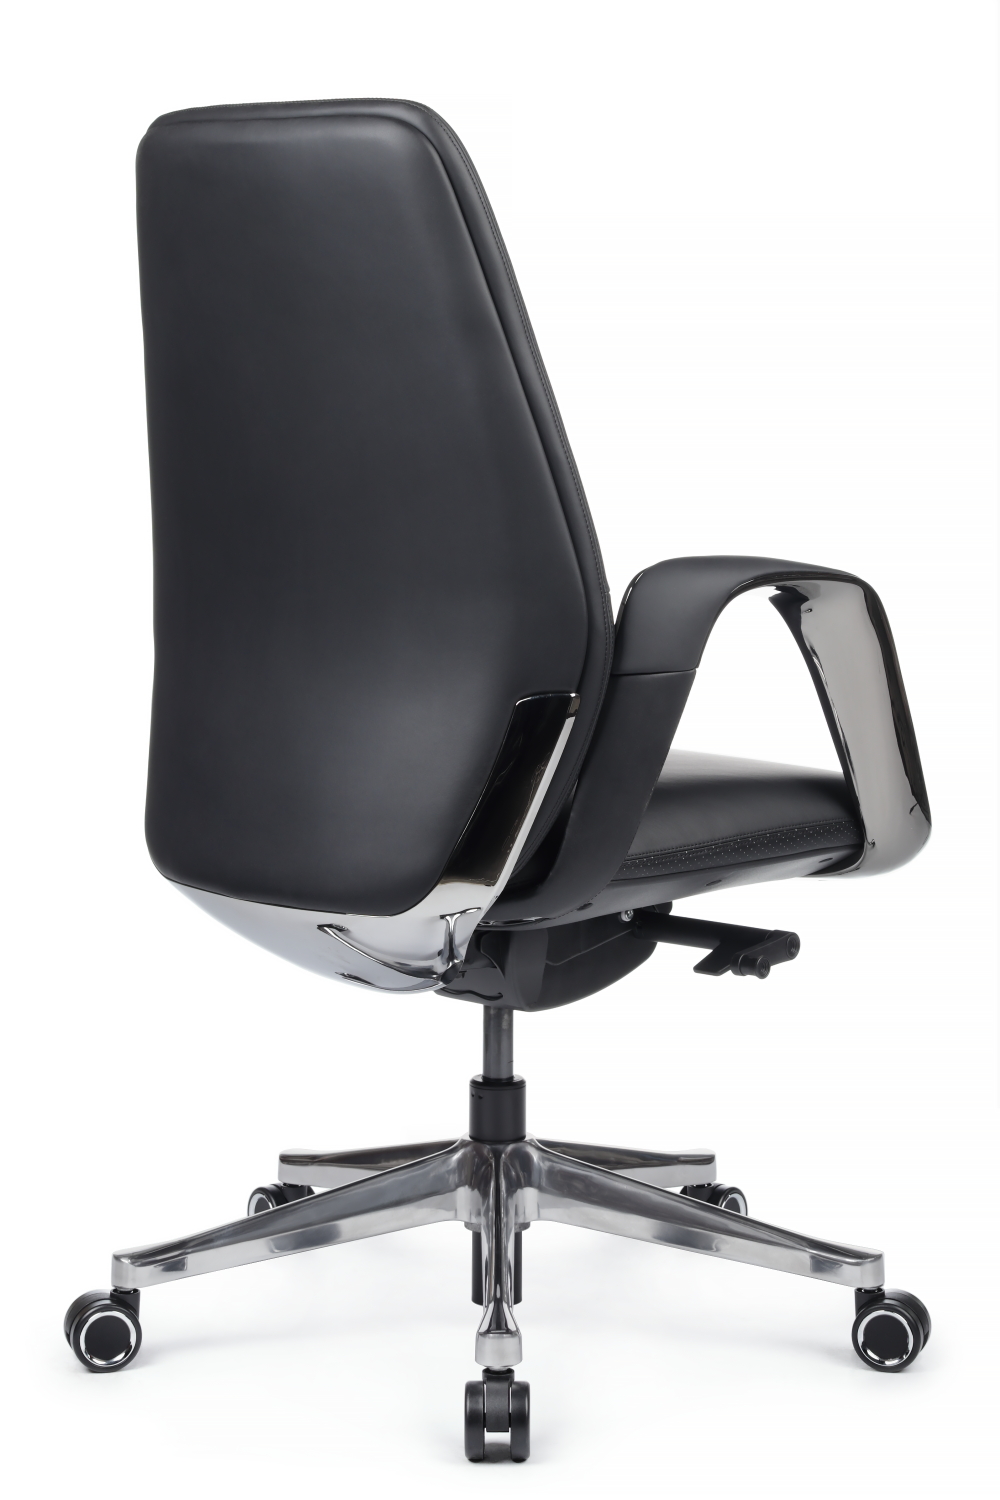 Компьютерное кресло RIVA DESIGN Napoli-M YZPN-YR021 без подголовника черный